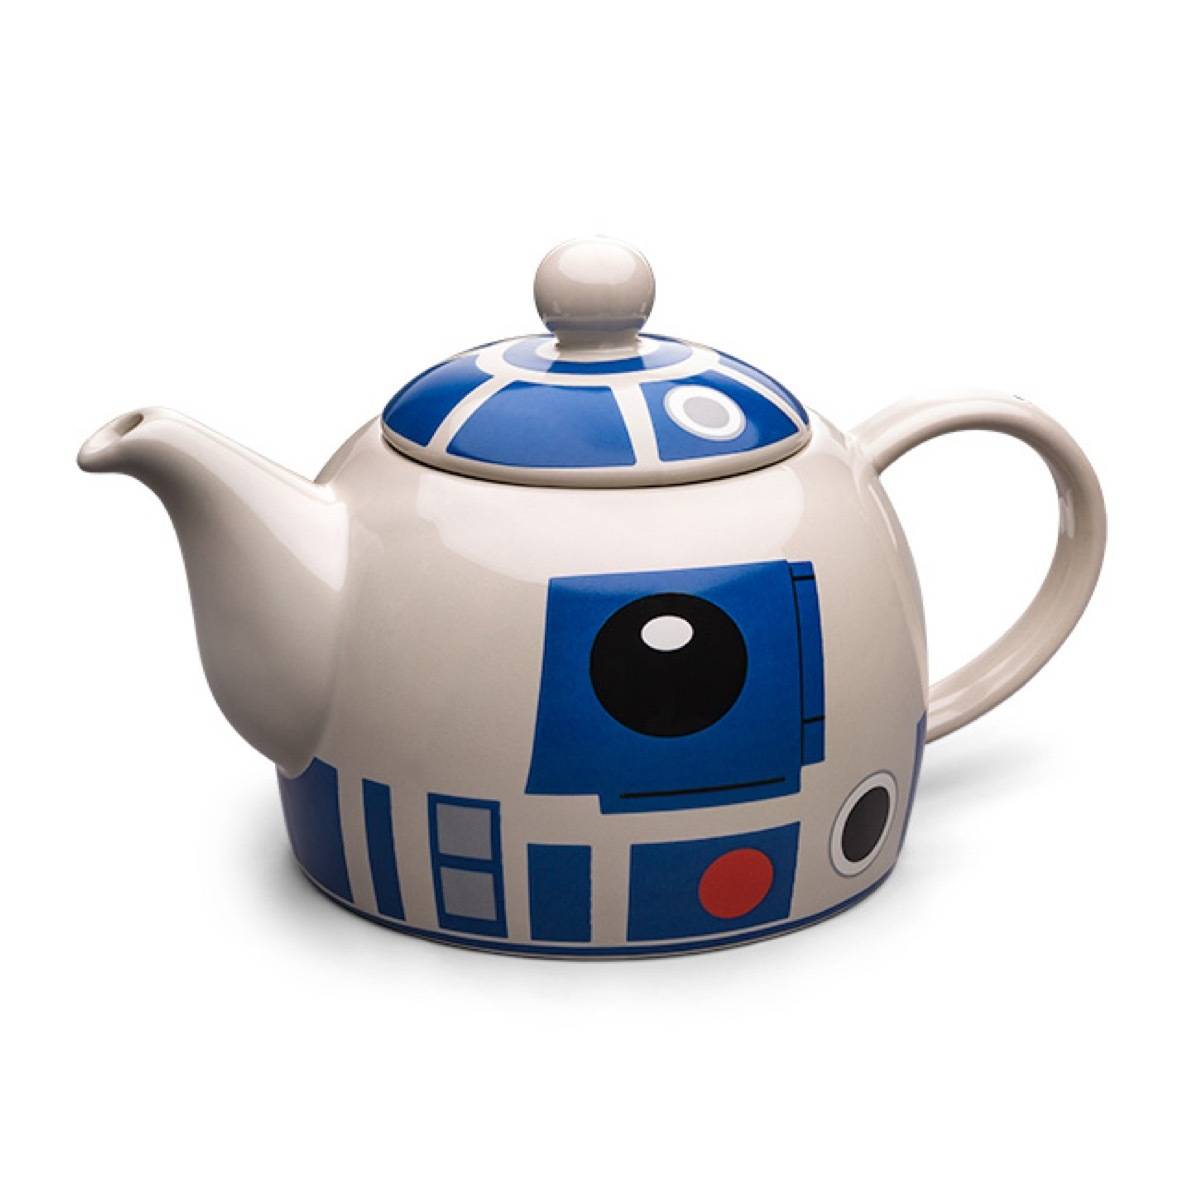 R2-D2 teapot